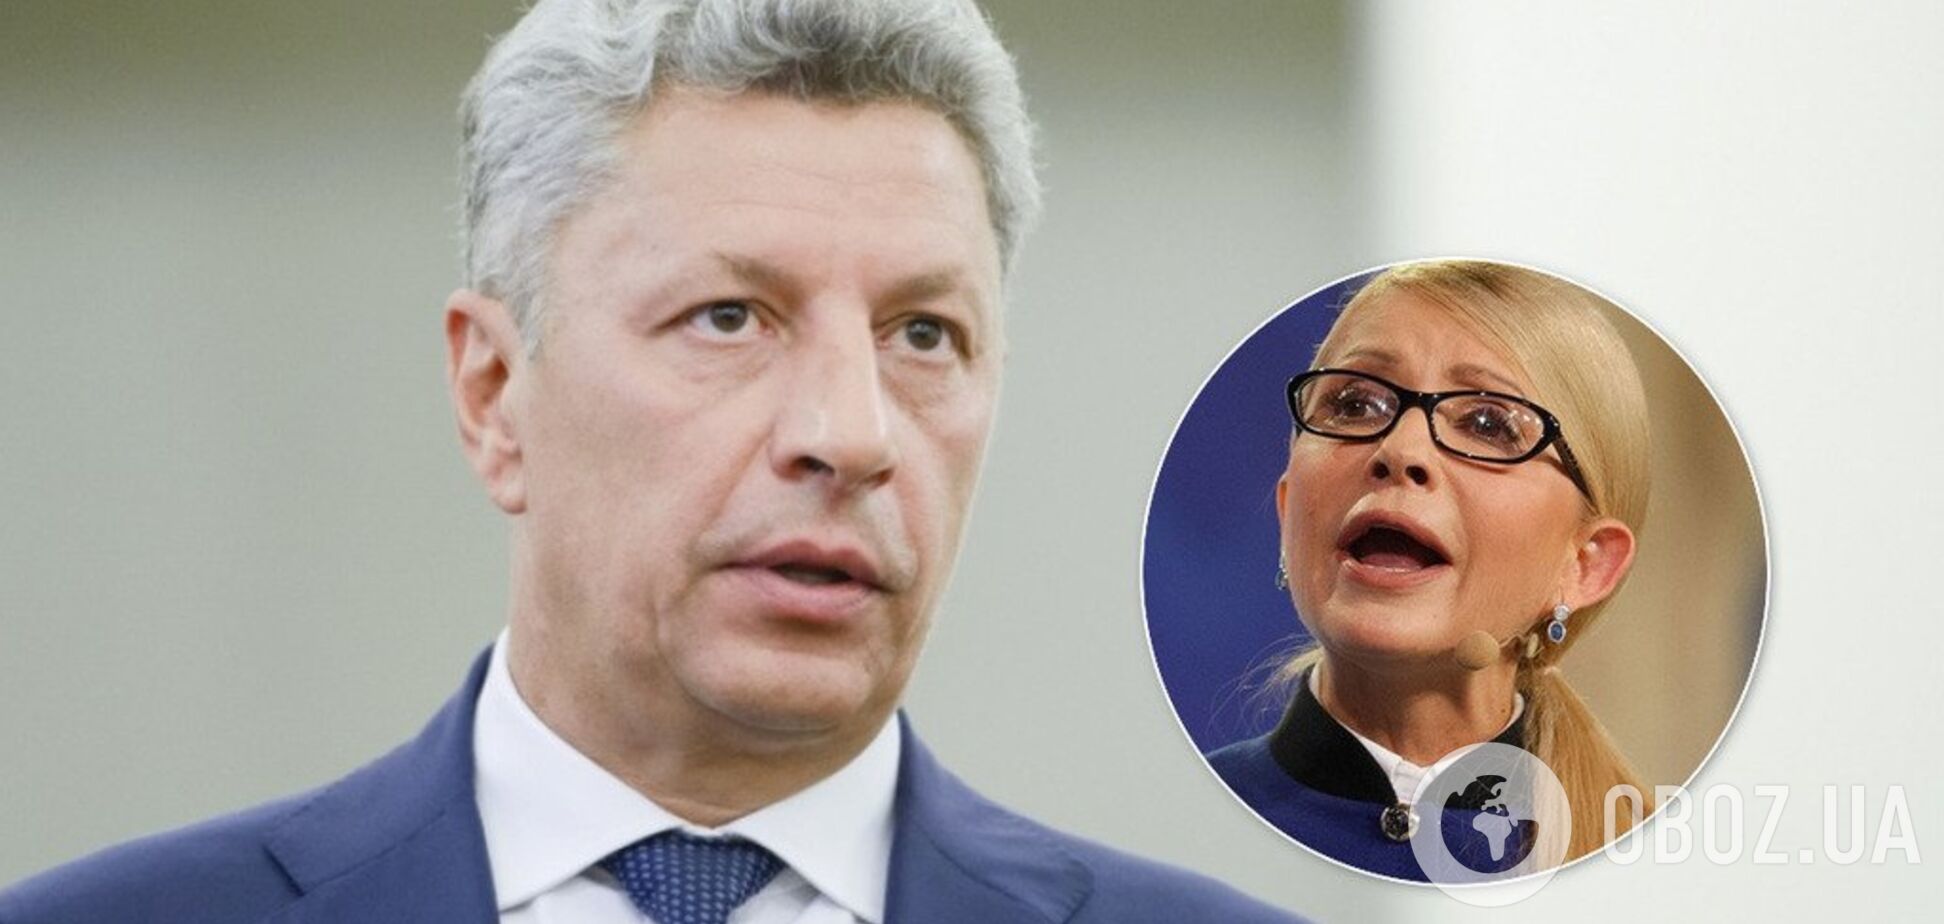 'Єдиний фронт!' Бойко заговорив про злиття з Тимошенко